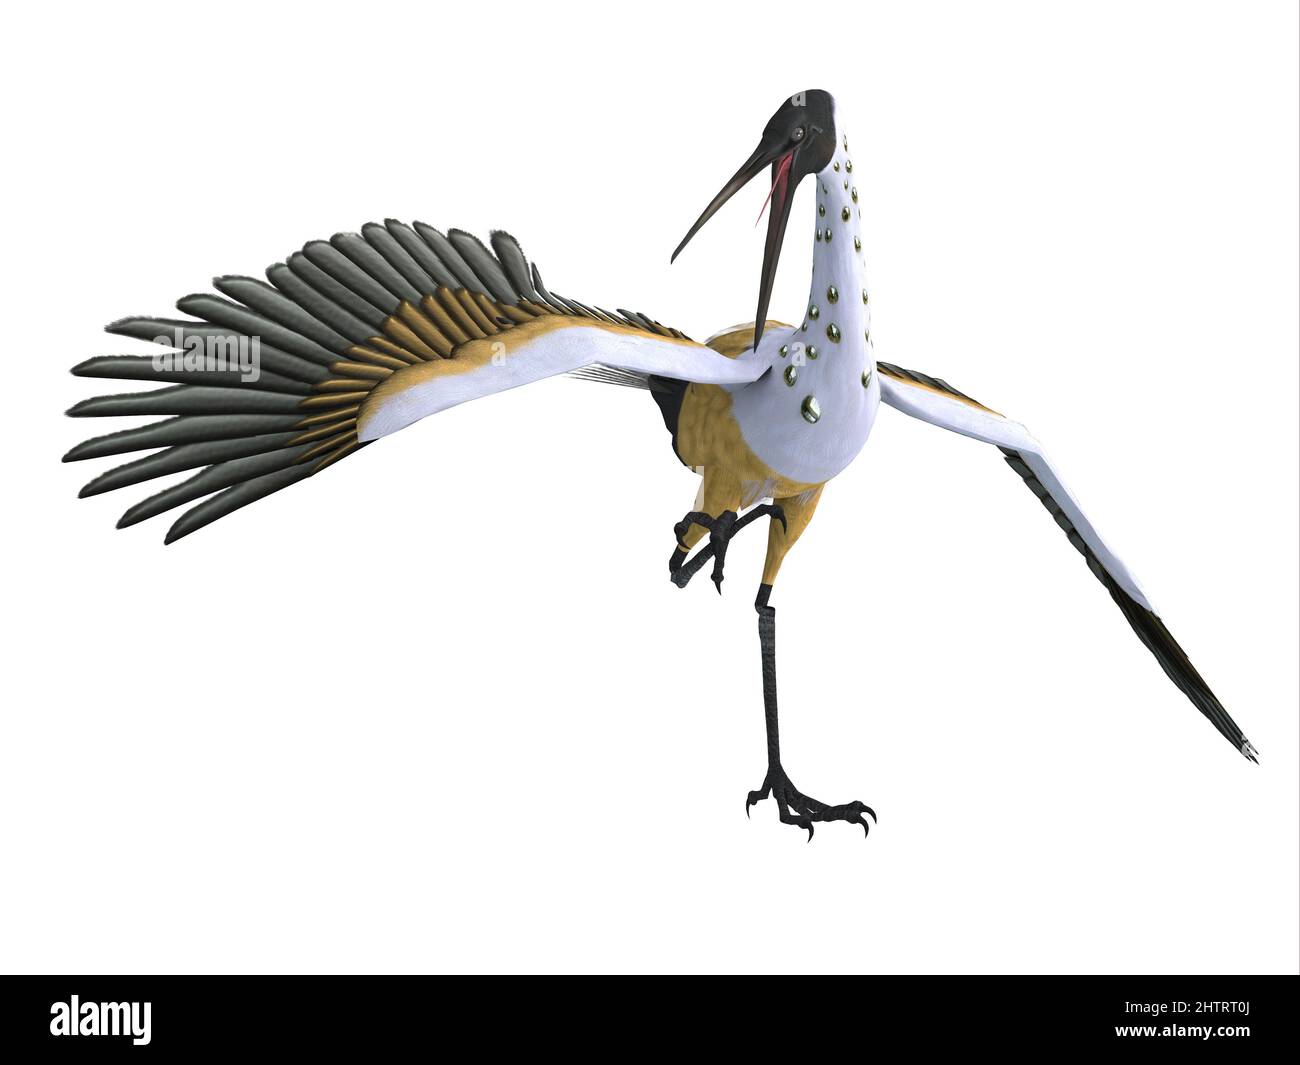 Les Stymphaliens Birds étaient un groupe d'oiseaux voraces dans la mythologie grecque qui mangeaient des humains et vivaient dans des marécages. Banque D'Images